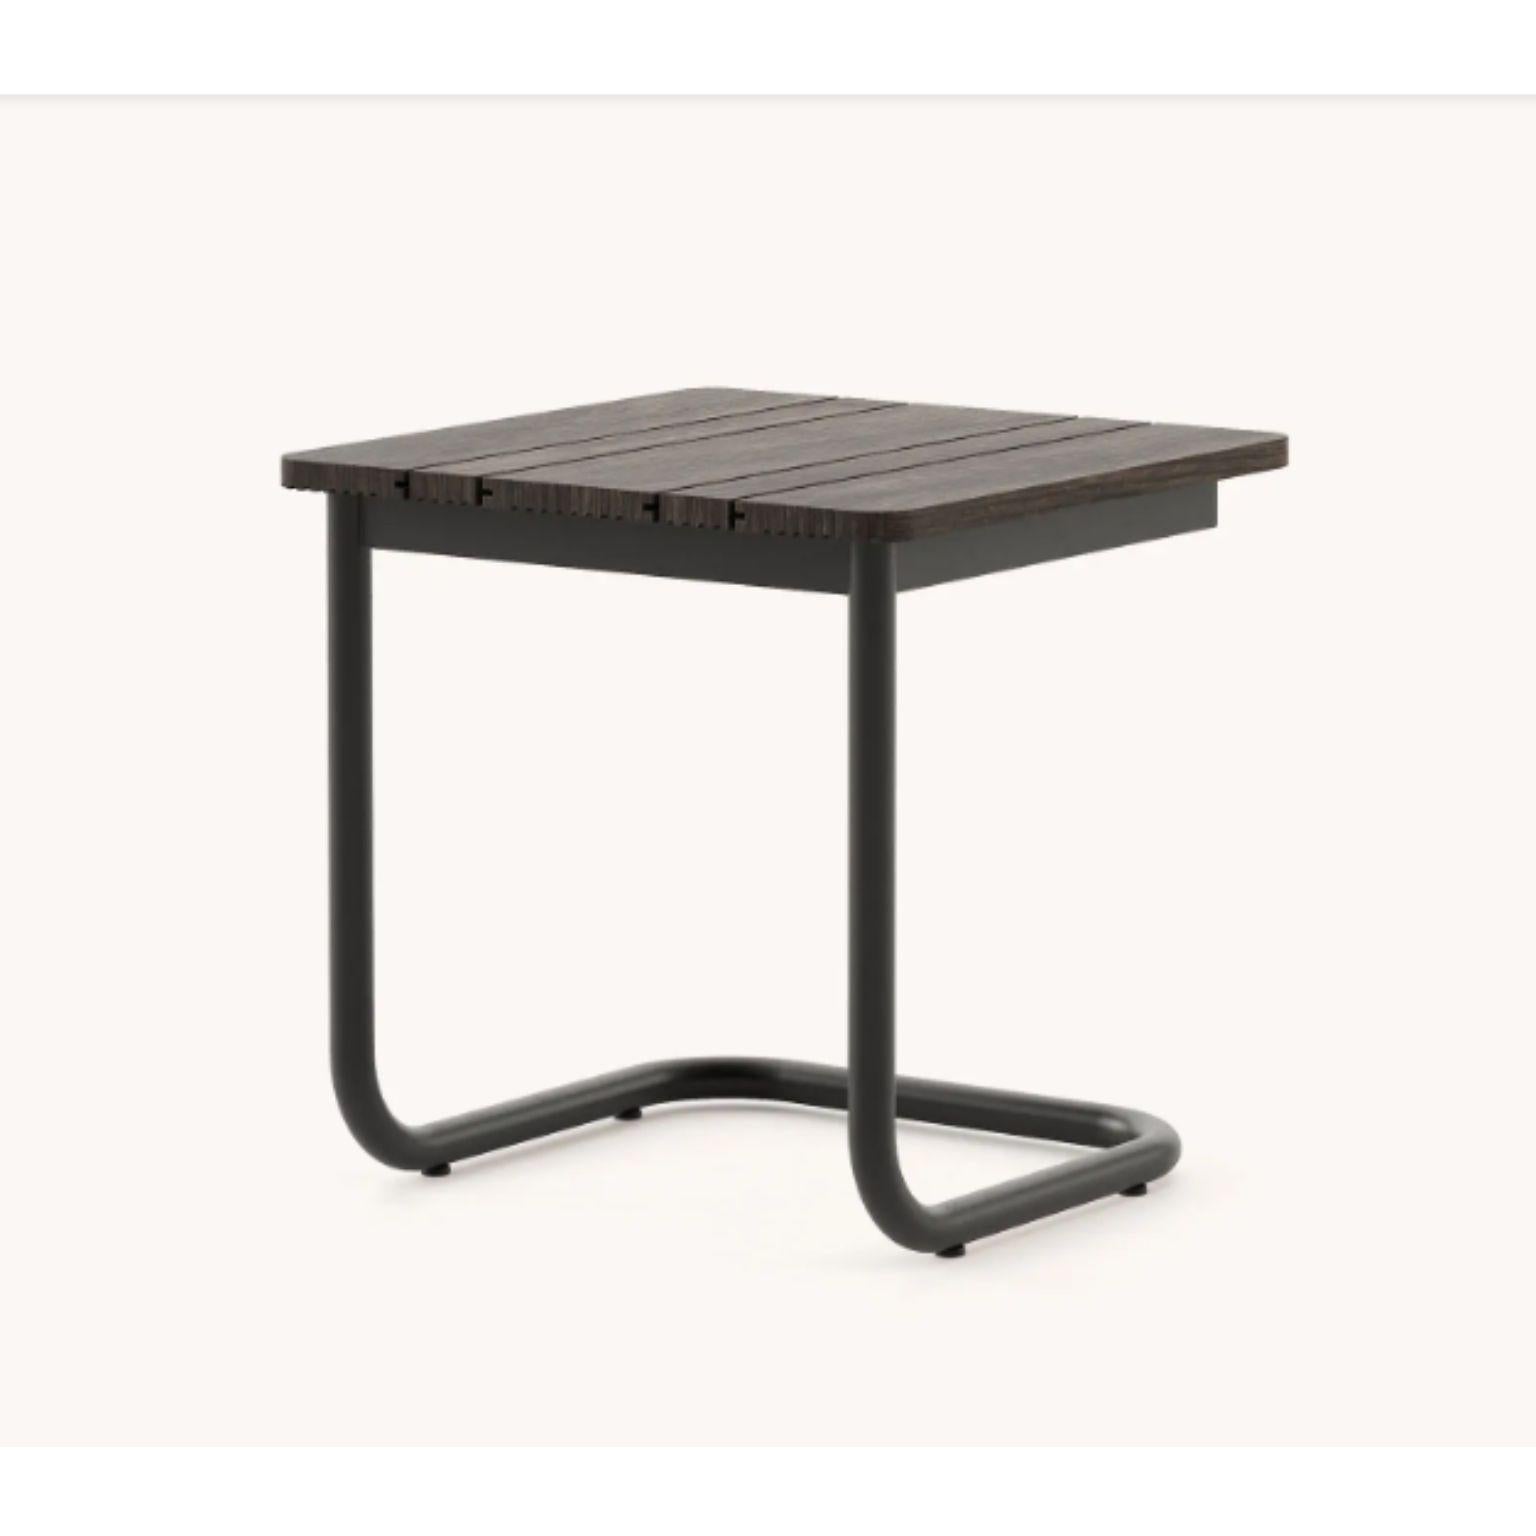 Table d'appoint Copacabana par Domkapa
MATERIAL : acier inoxydable texturé noir, bois de bambou. 
Dimensions : L 50 x P 50 x H 50 cm : L 50 x D 50 x H 50 cm.
Également disponible dans différents matériaux. 

Parfois, moins, c'est mieux. La table